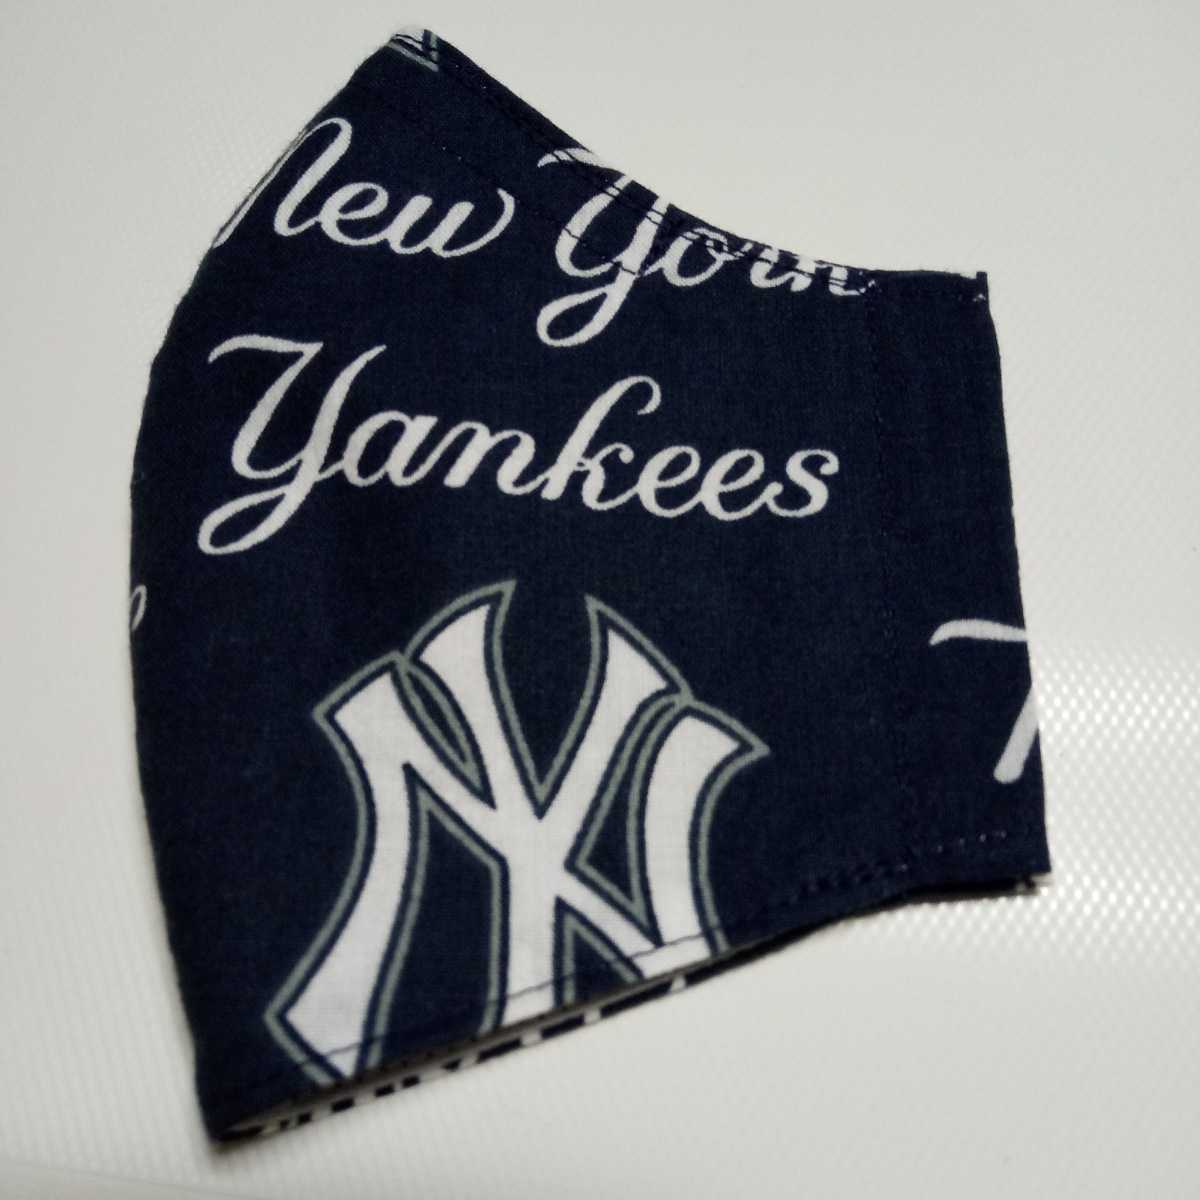  MLB New York Yankees ヤンキース ロゴ柄マスクカバー フェイスカバーハンドメイドメジャーリーグベースボール カナダ製 _画像2